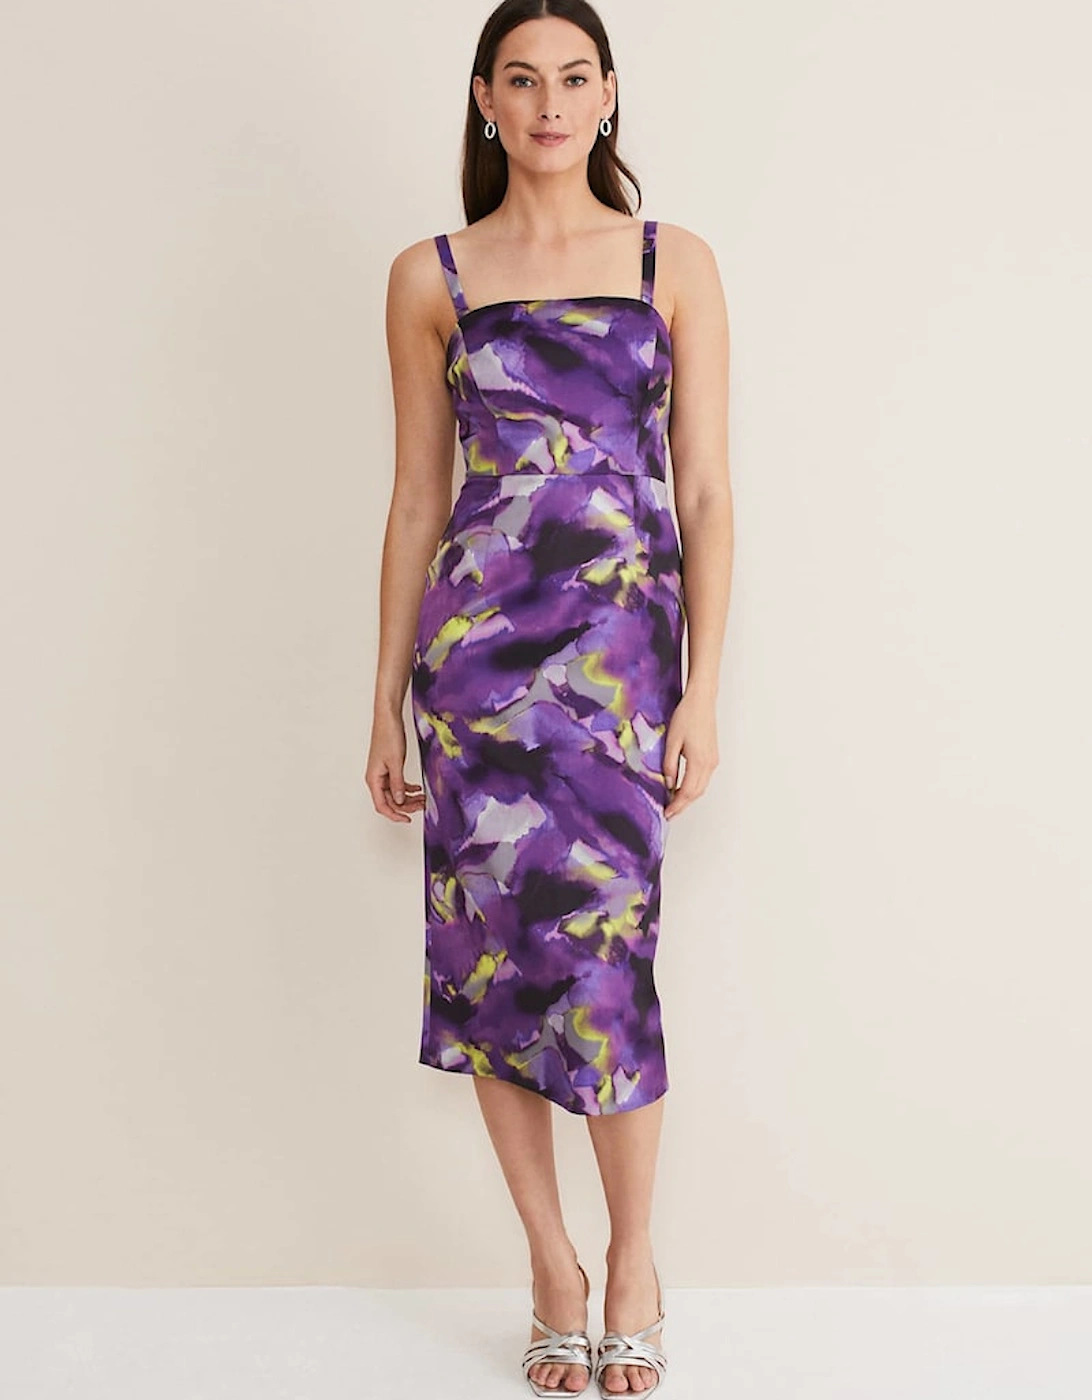 Adelita Abstract Print Dress, 7 of 6